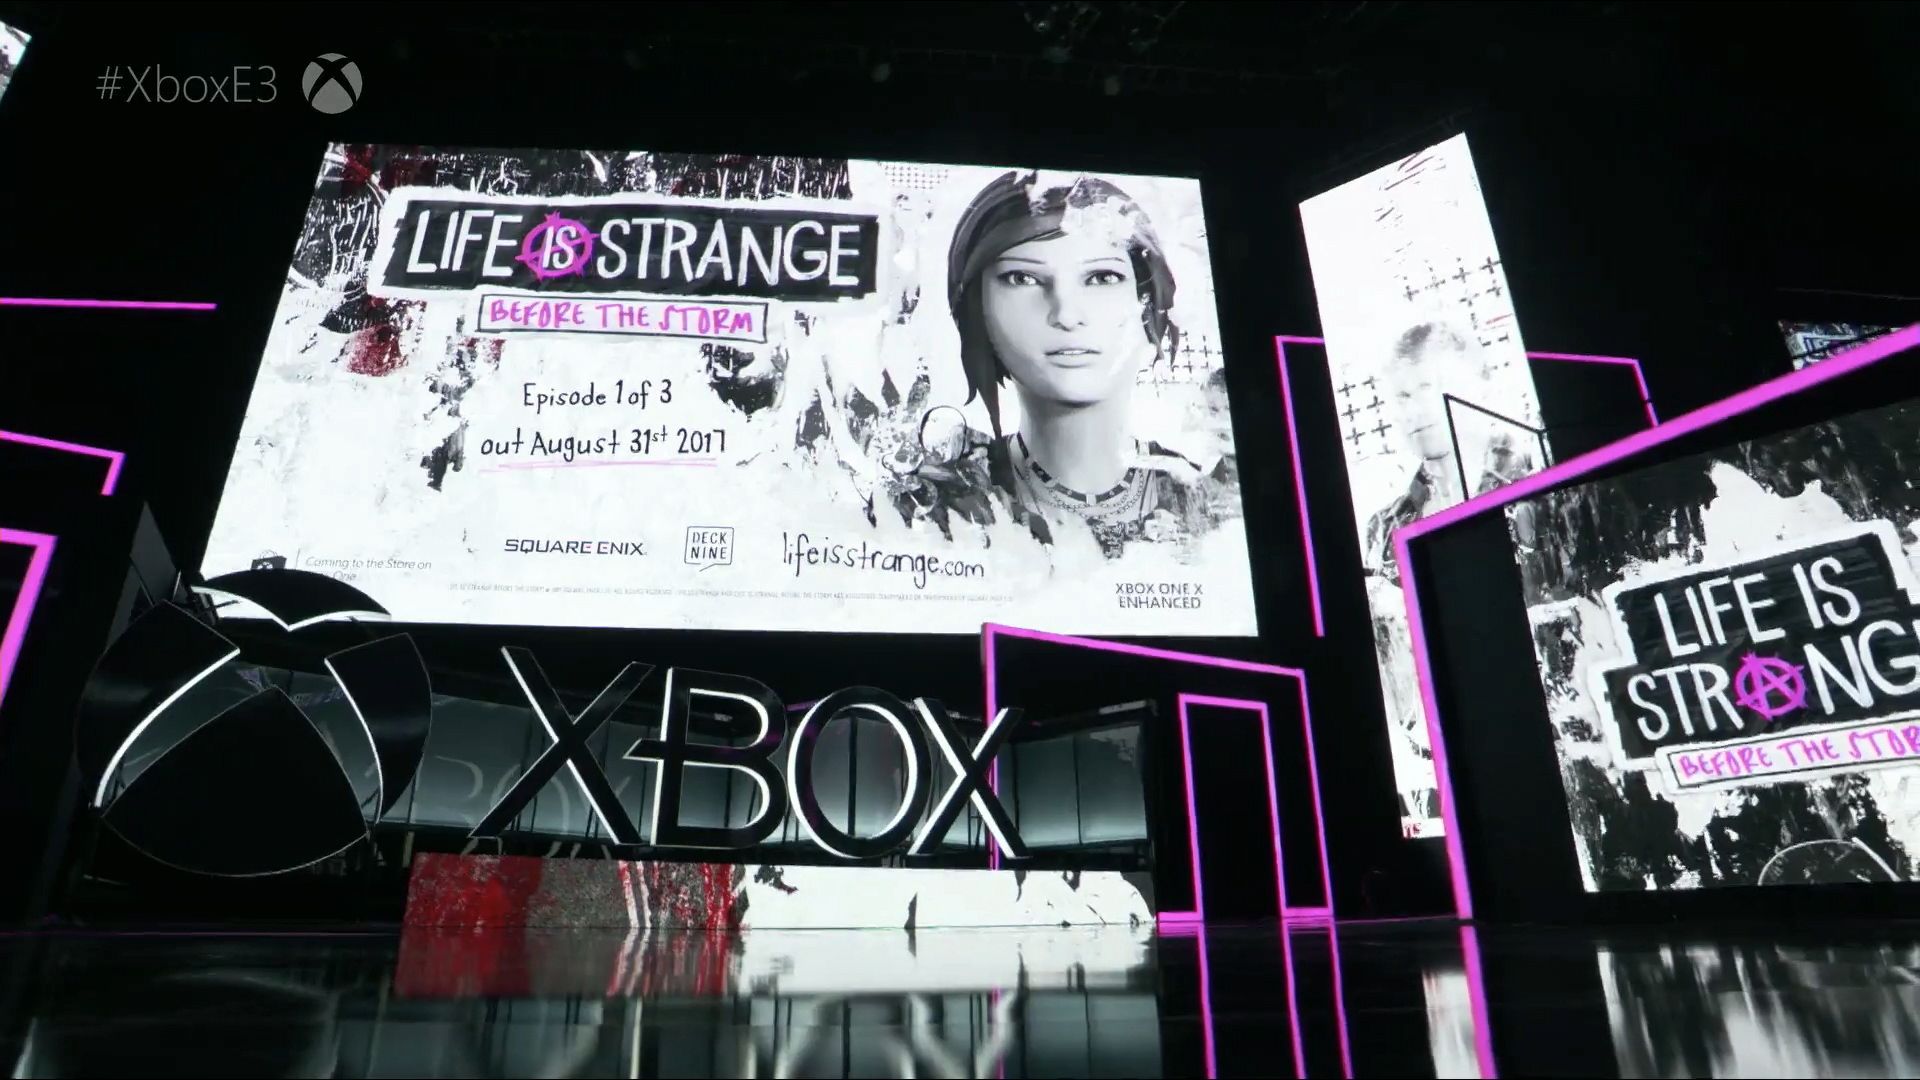 Microsoft bate o martelo: jogos da Bethesda serão exclusivos Xbox